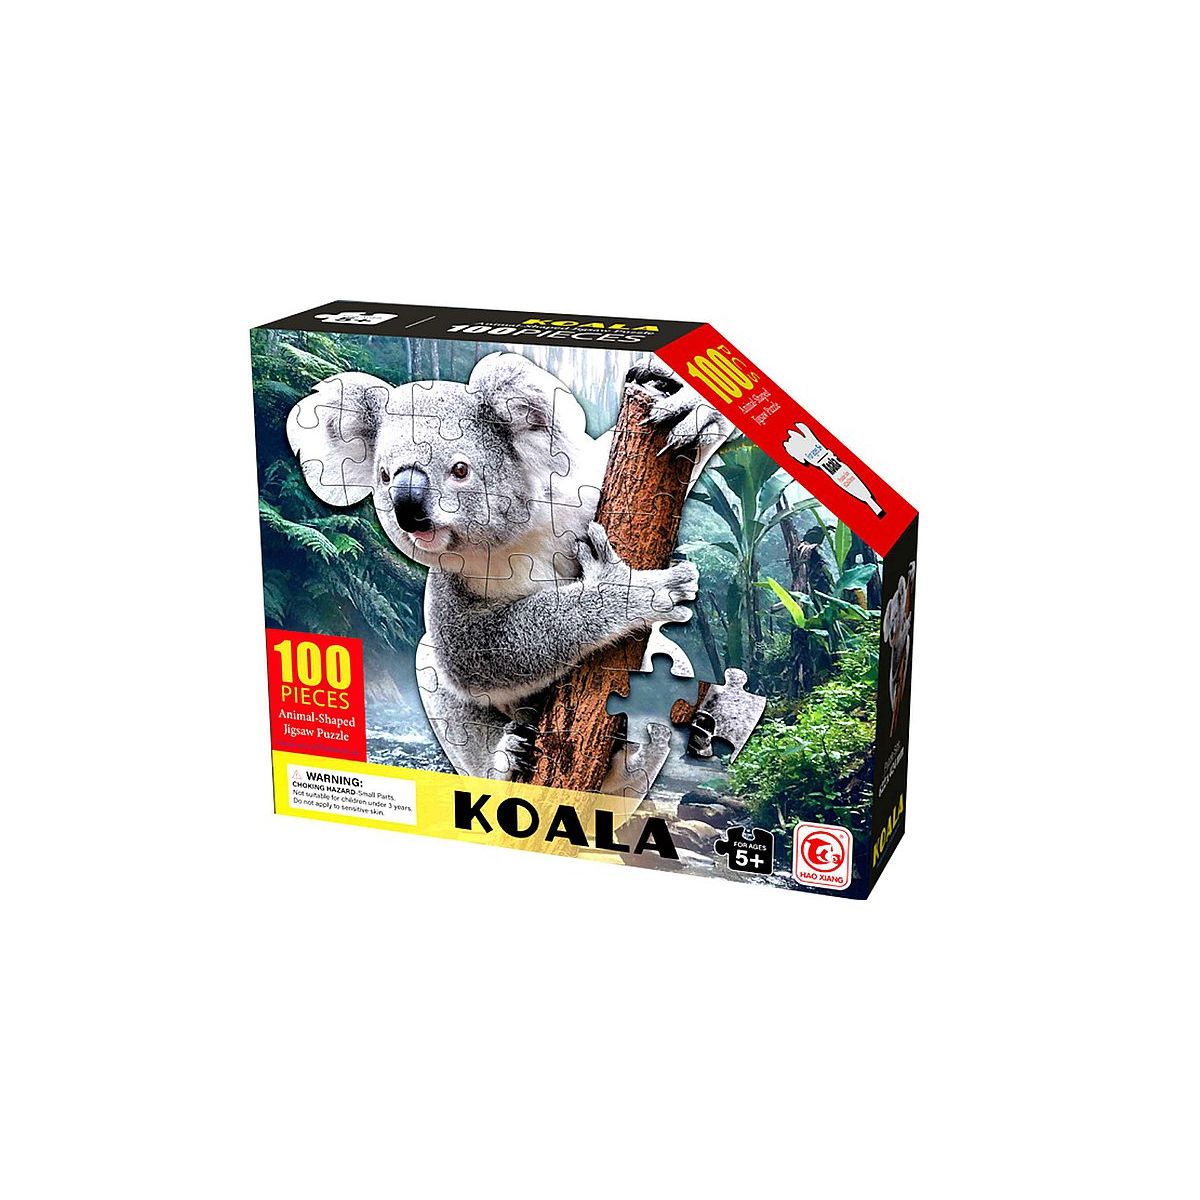 Puzzle Adar koala 100 el. (586291)